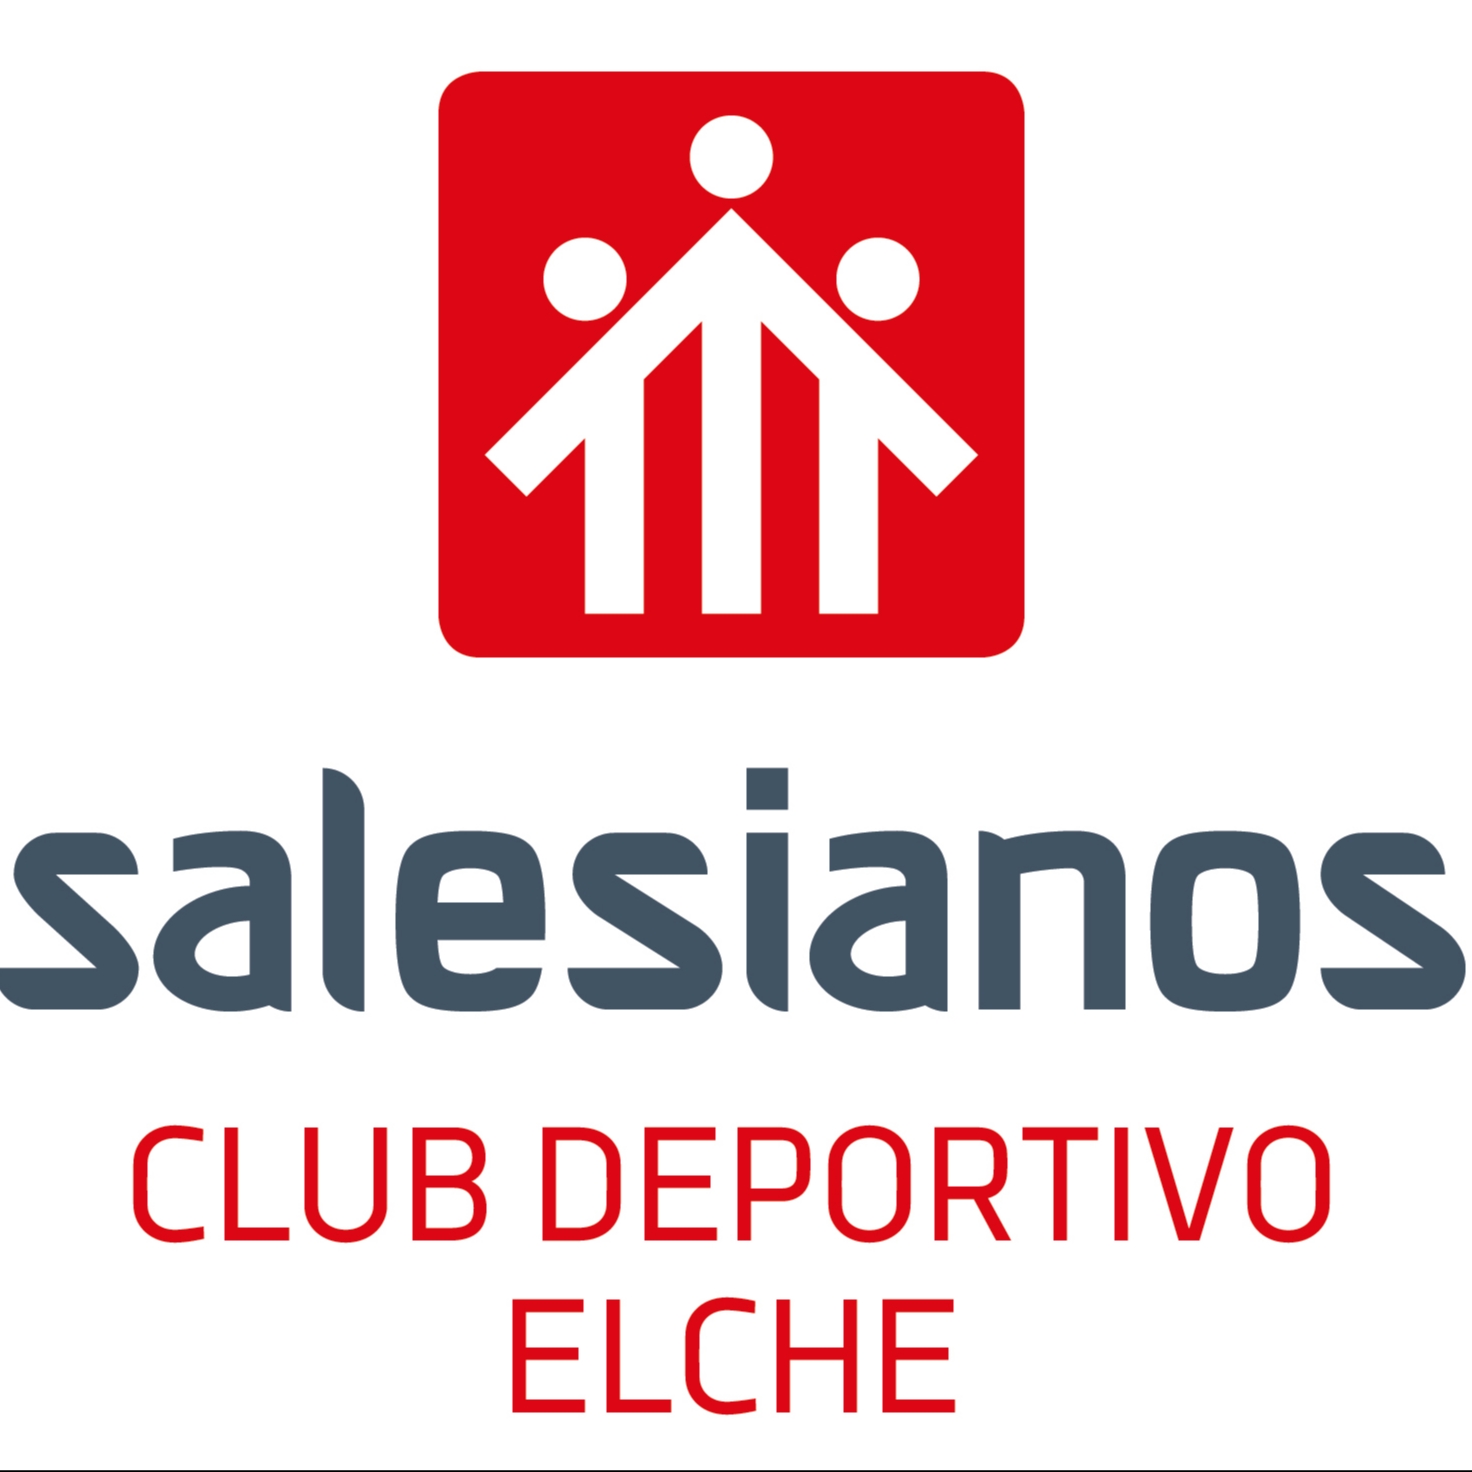 CLUB DEPORTIVO SALESIANOS ELCHE